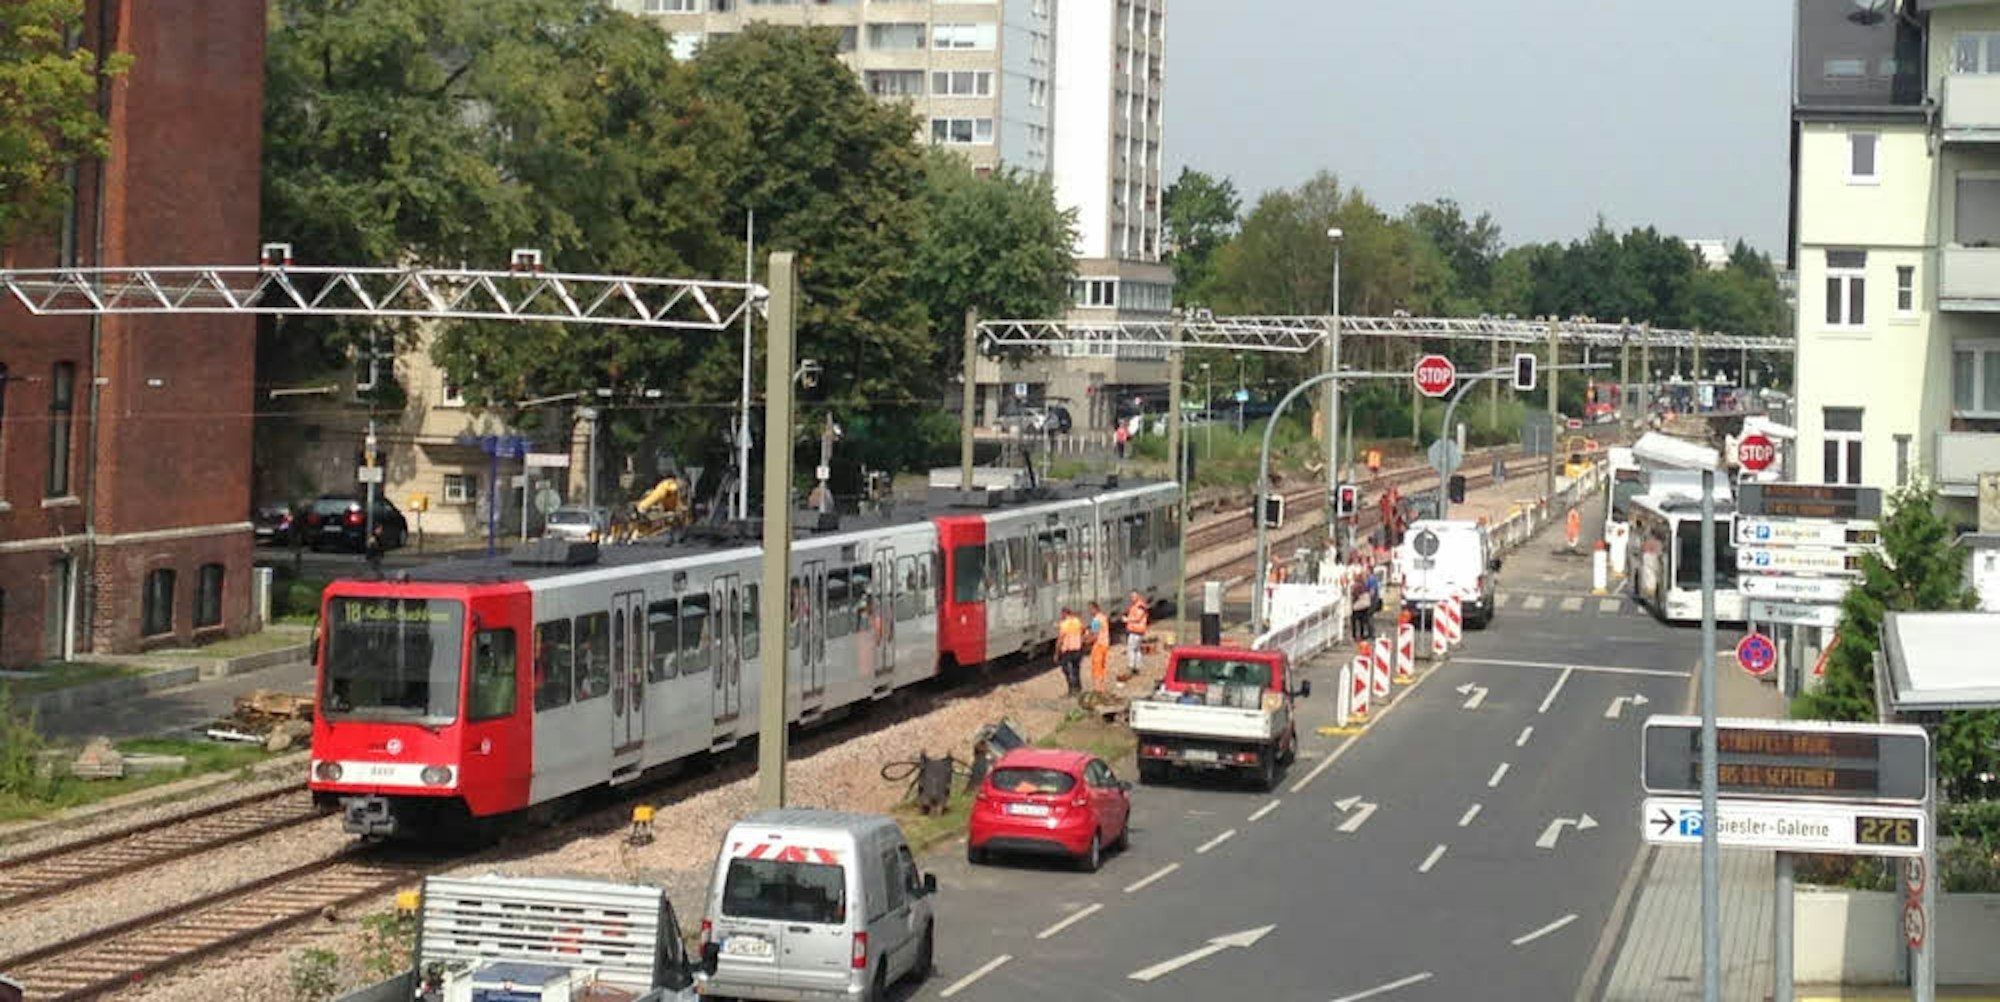 Die Stadtbahnlinie 18 fährt wieder von Schwadorf nach Mitte und weiter nach Köln. In den Sommerferien war dieser Teil der Strecke wegen Bauarbeiten gesperrt.